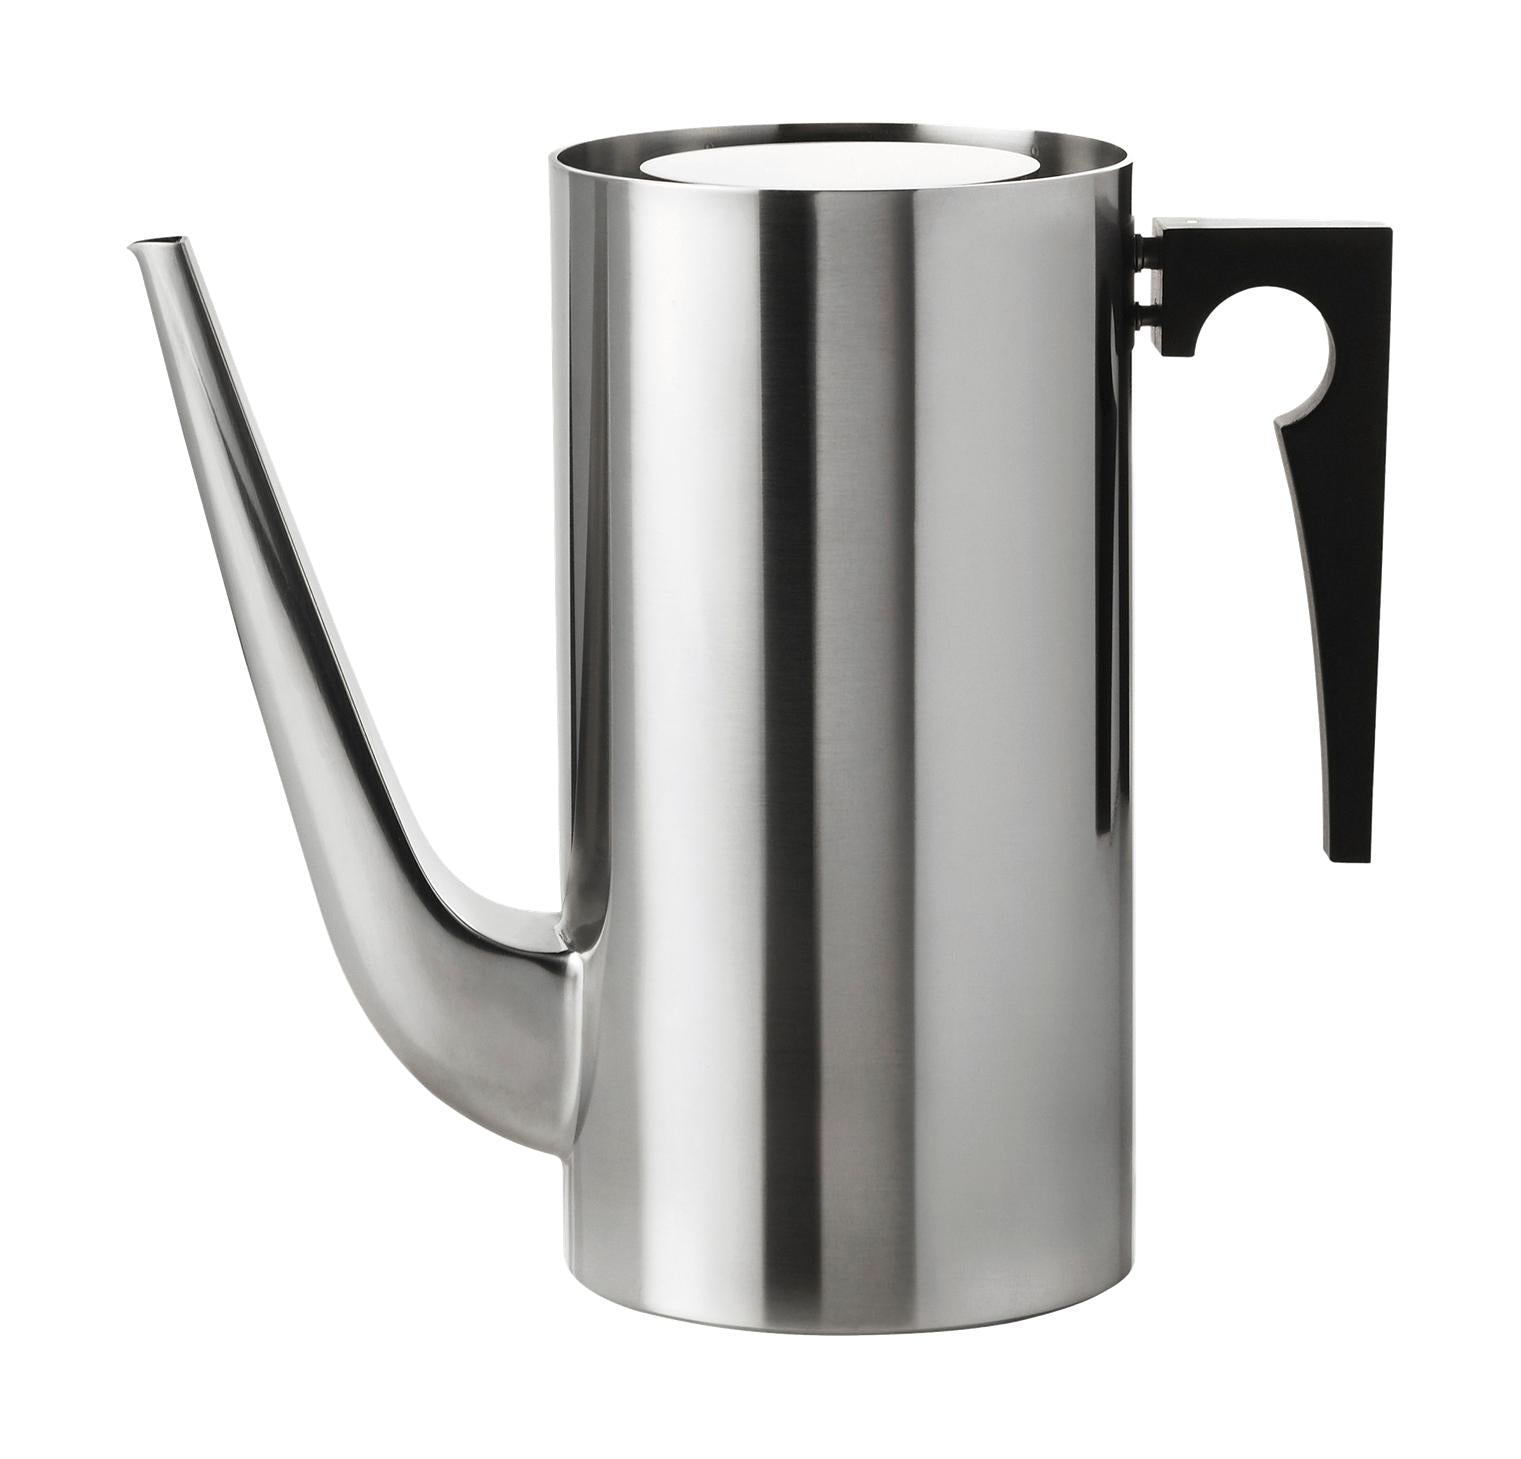 Stelton Arne Jacobsen Kaffekande 1.5 L